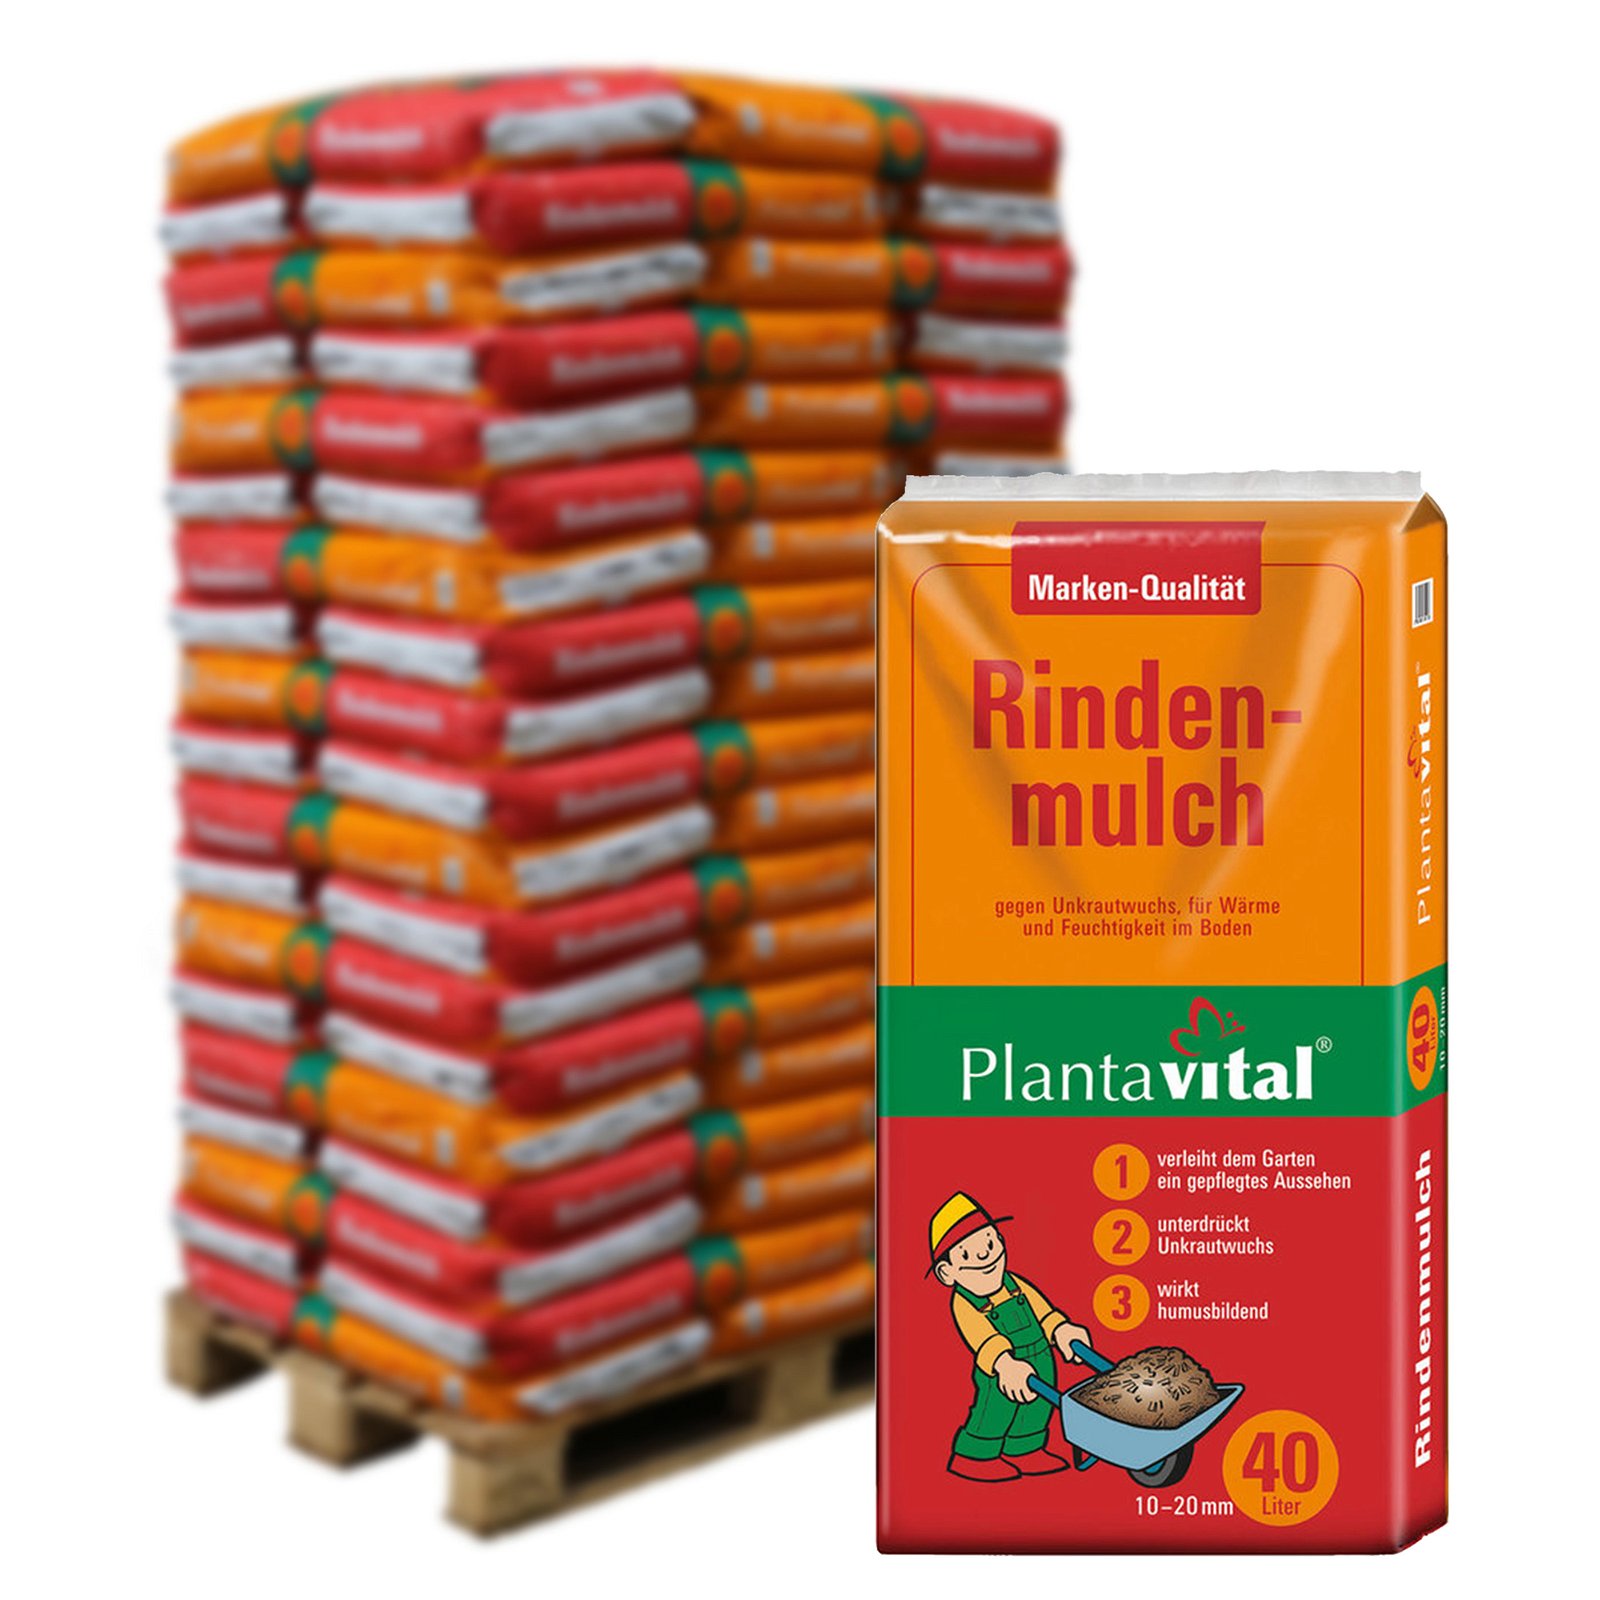 Plantavital Rindenmulch fein, 2280 l gesamt, 57 Sack á 40 l, Palettenware ohne zusätzliche Versandkosten